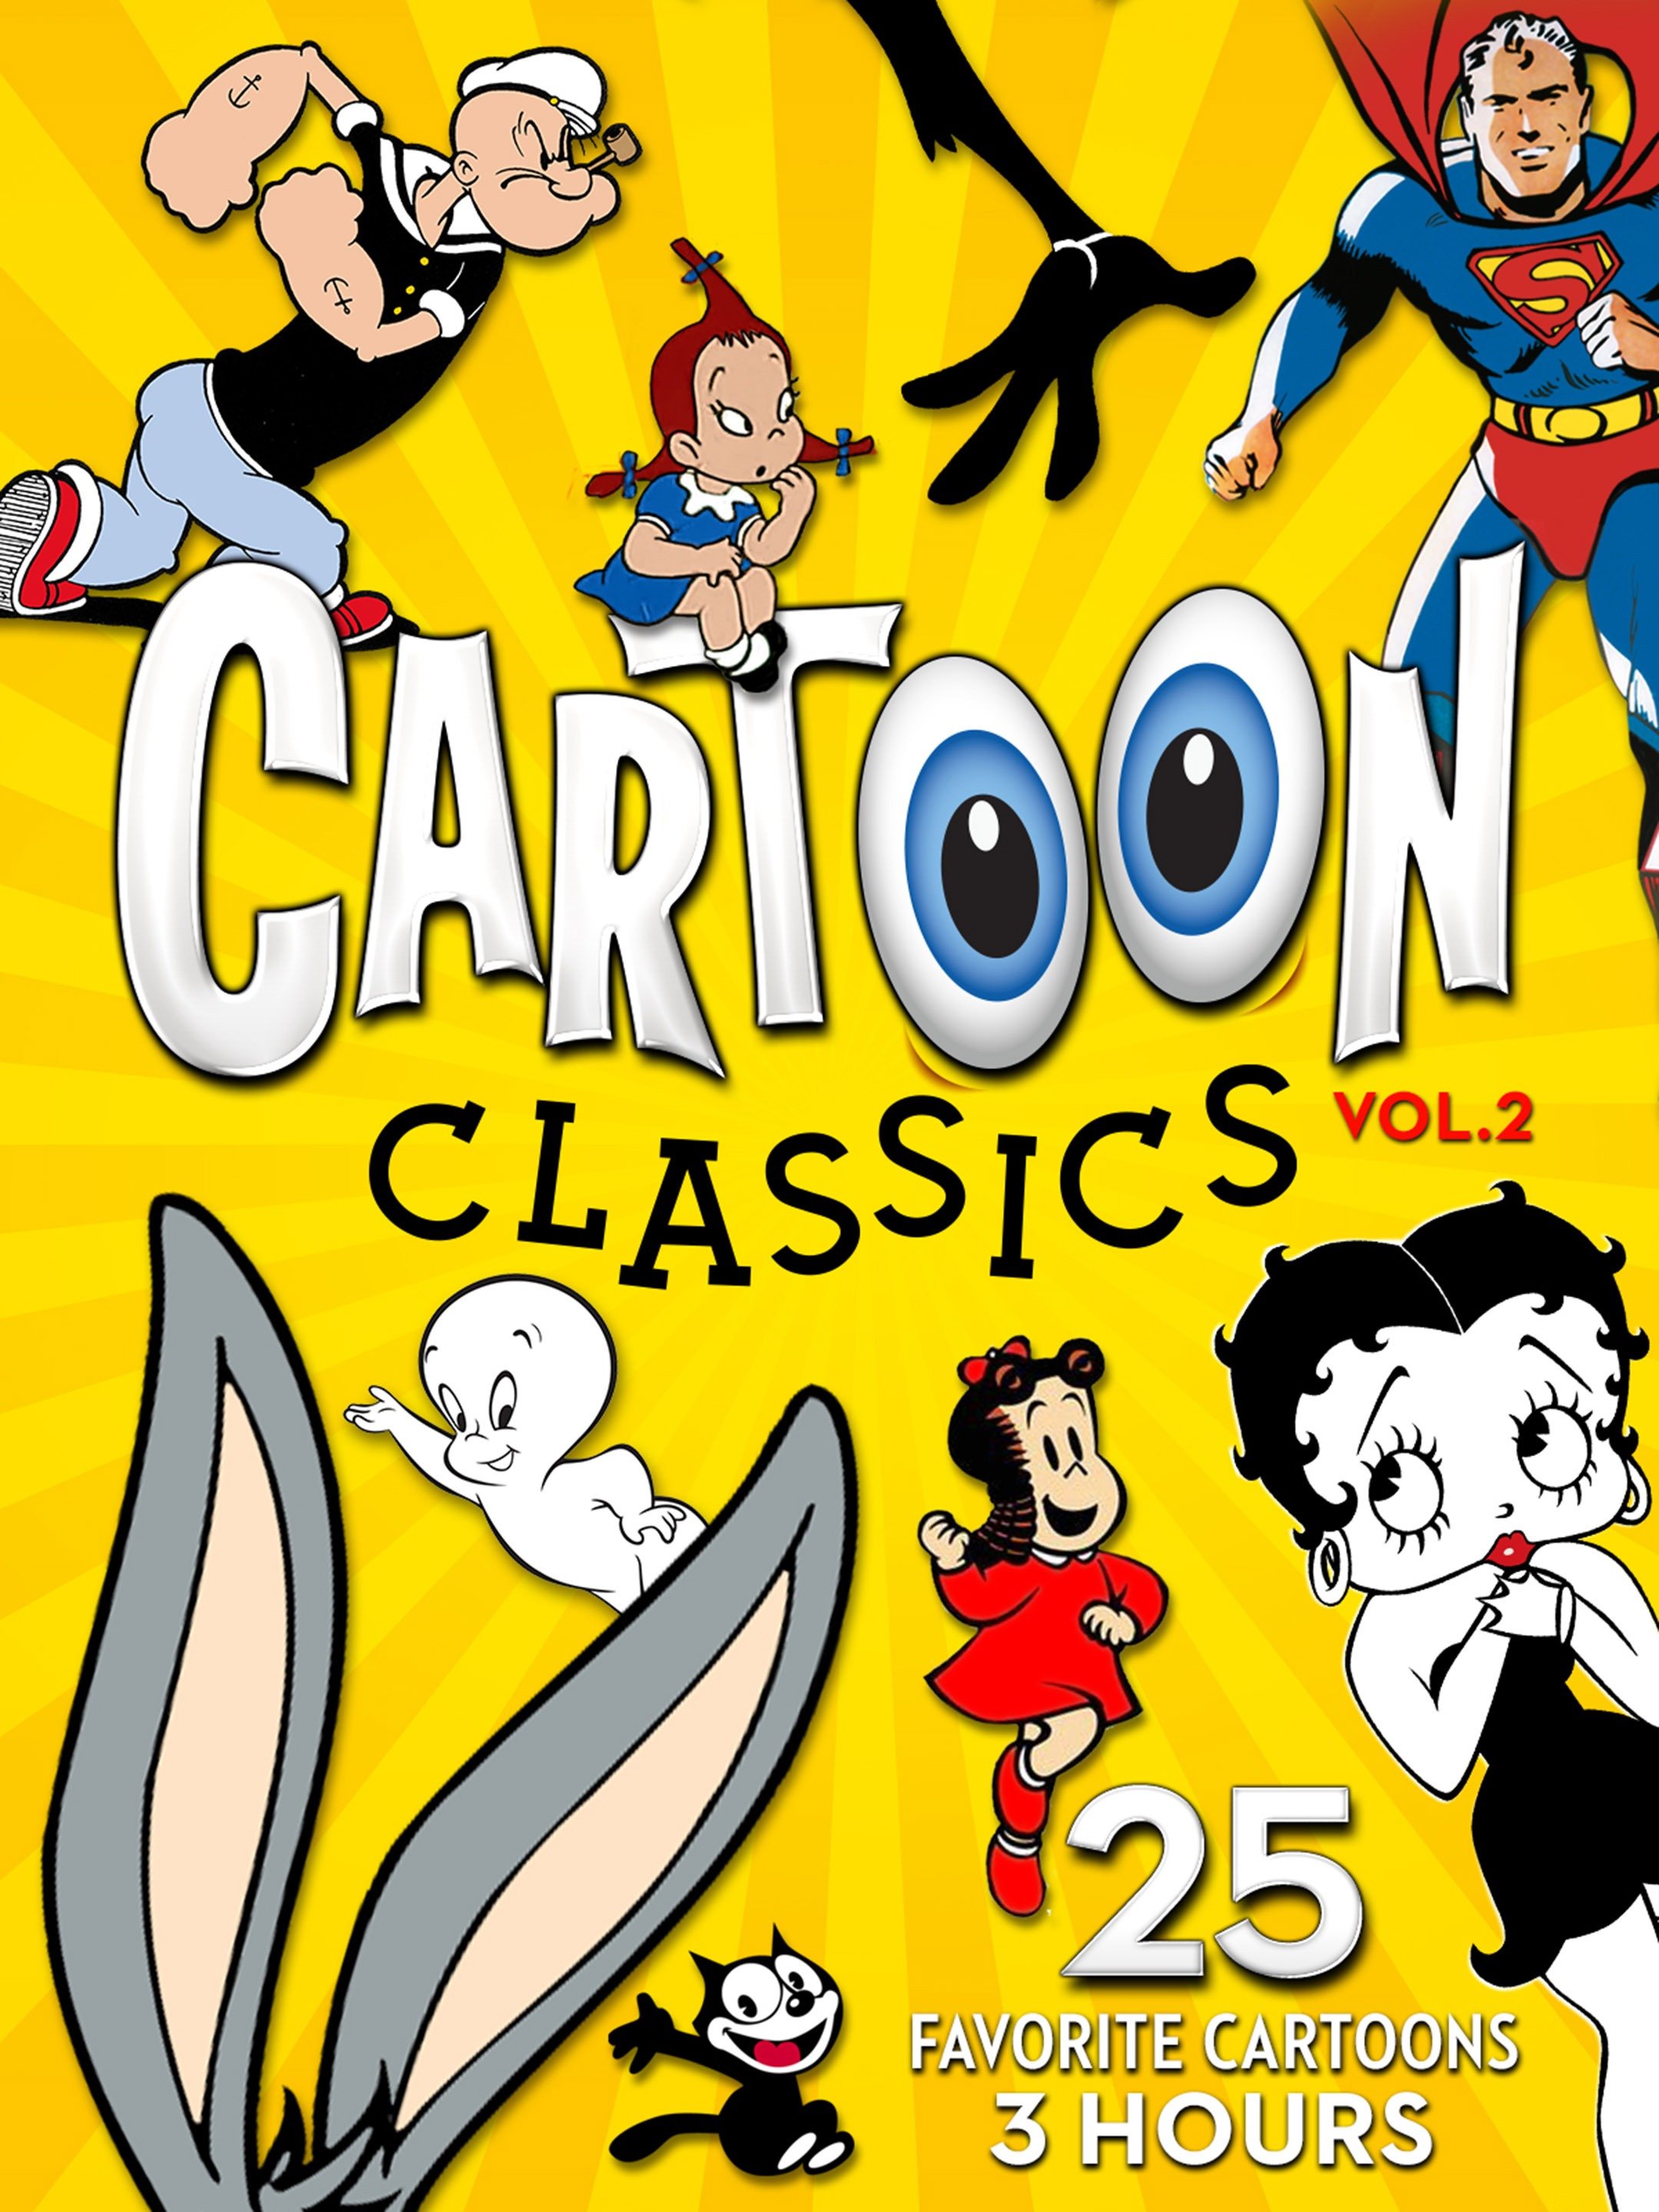 14 Classic Cartoons Ideas In 2021 Classic Cartoons Ca - vrogue.co